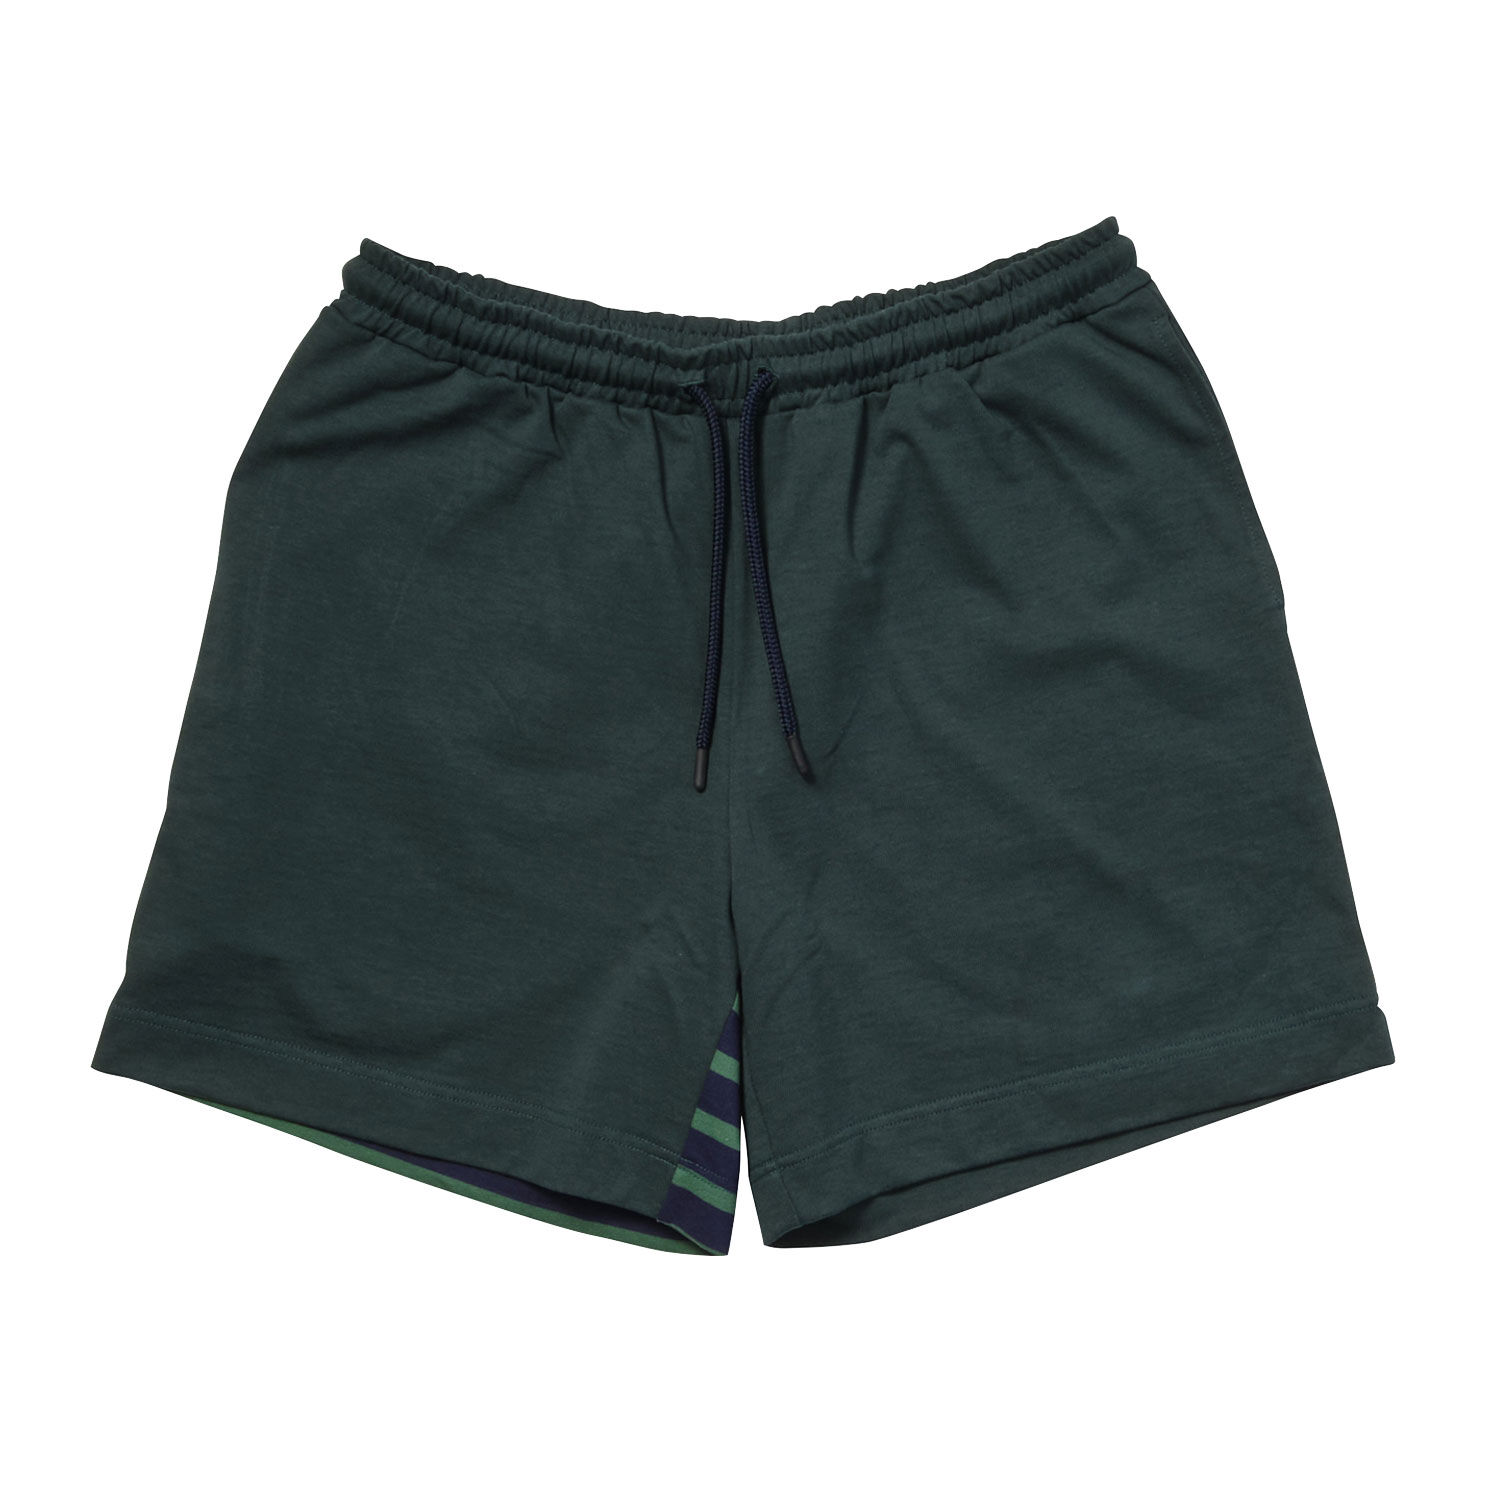 Marine Stripe Shorts | Men's Underwear brand TOOT official website